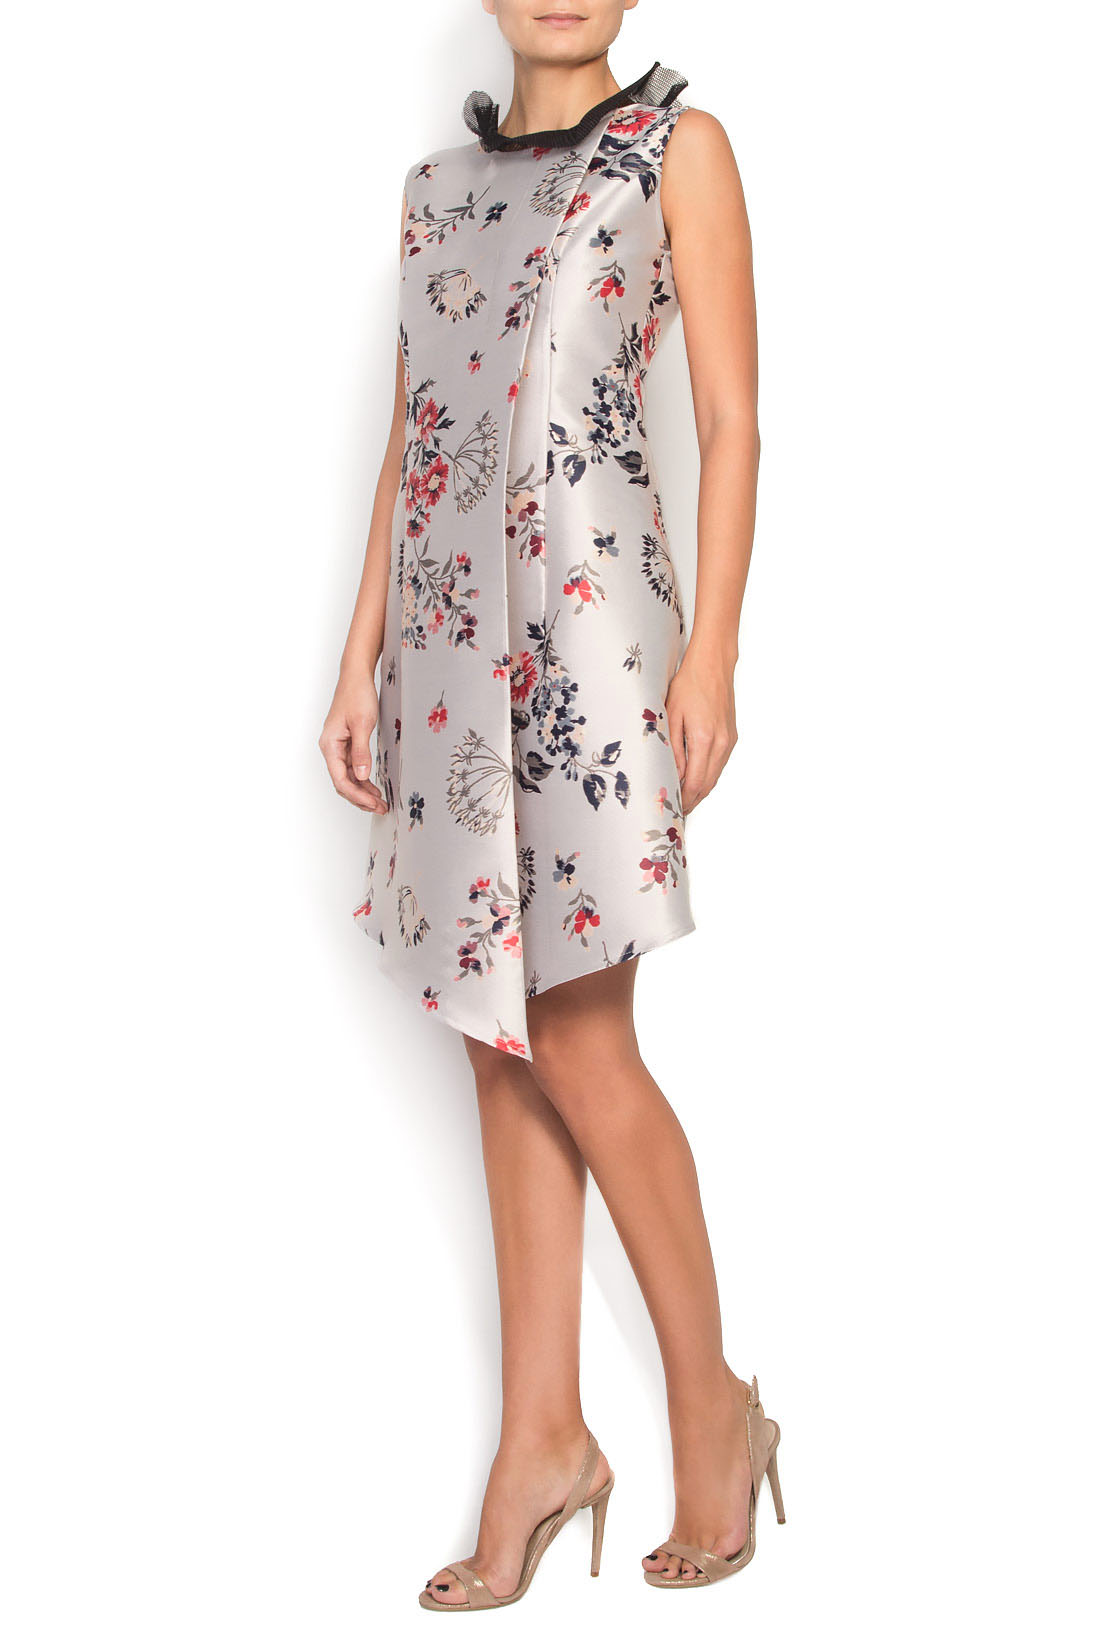 Floral-jacquard mini skirt Elena Perseil image 1